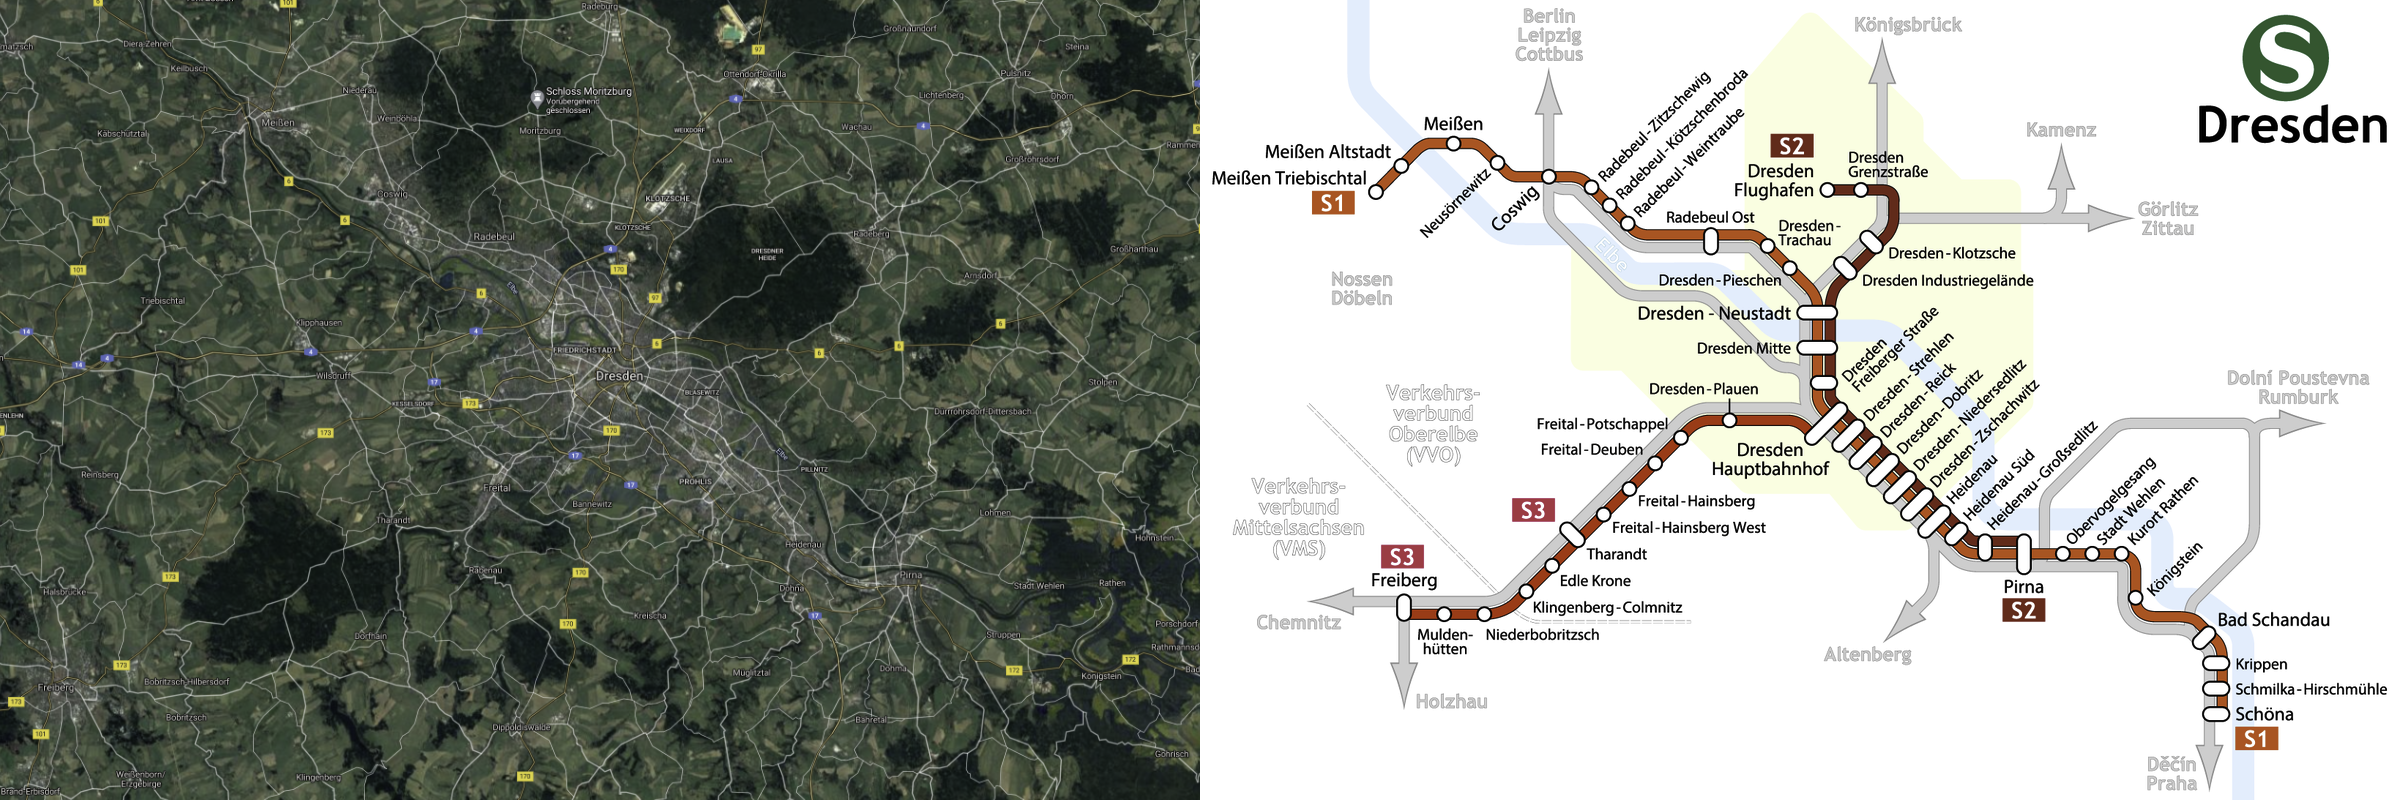 Auf der linken Seite befindet sich ein Satellitenbild von Dresden und der näheren Umgebung, auf dem Ortsnamen und Hauptstraßen eingezeichnet sind. Auf der rechten Seite befindet sich ein Liniennetzplan für die S-Bahn Dresden.